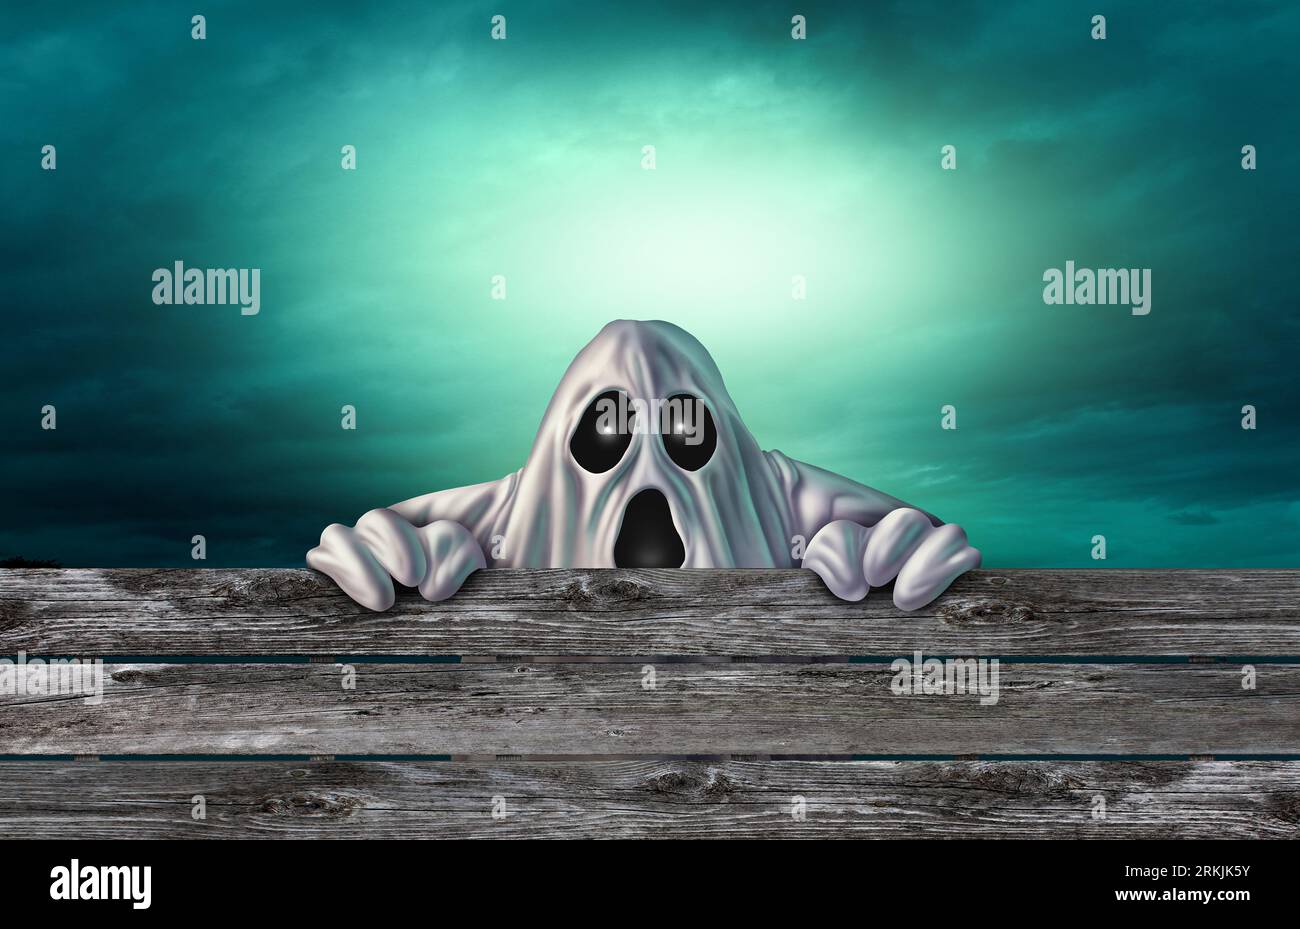 Halloween Ghost background e eerieGhosts nei panni di un mostro spaventoso che sbircia nei panni di uno spirito fantasma arrabbiato e inquietante che si nasconde come un concetto di banner di halloween Foto Stock